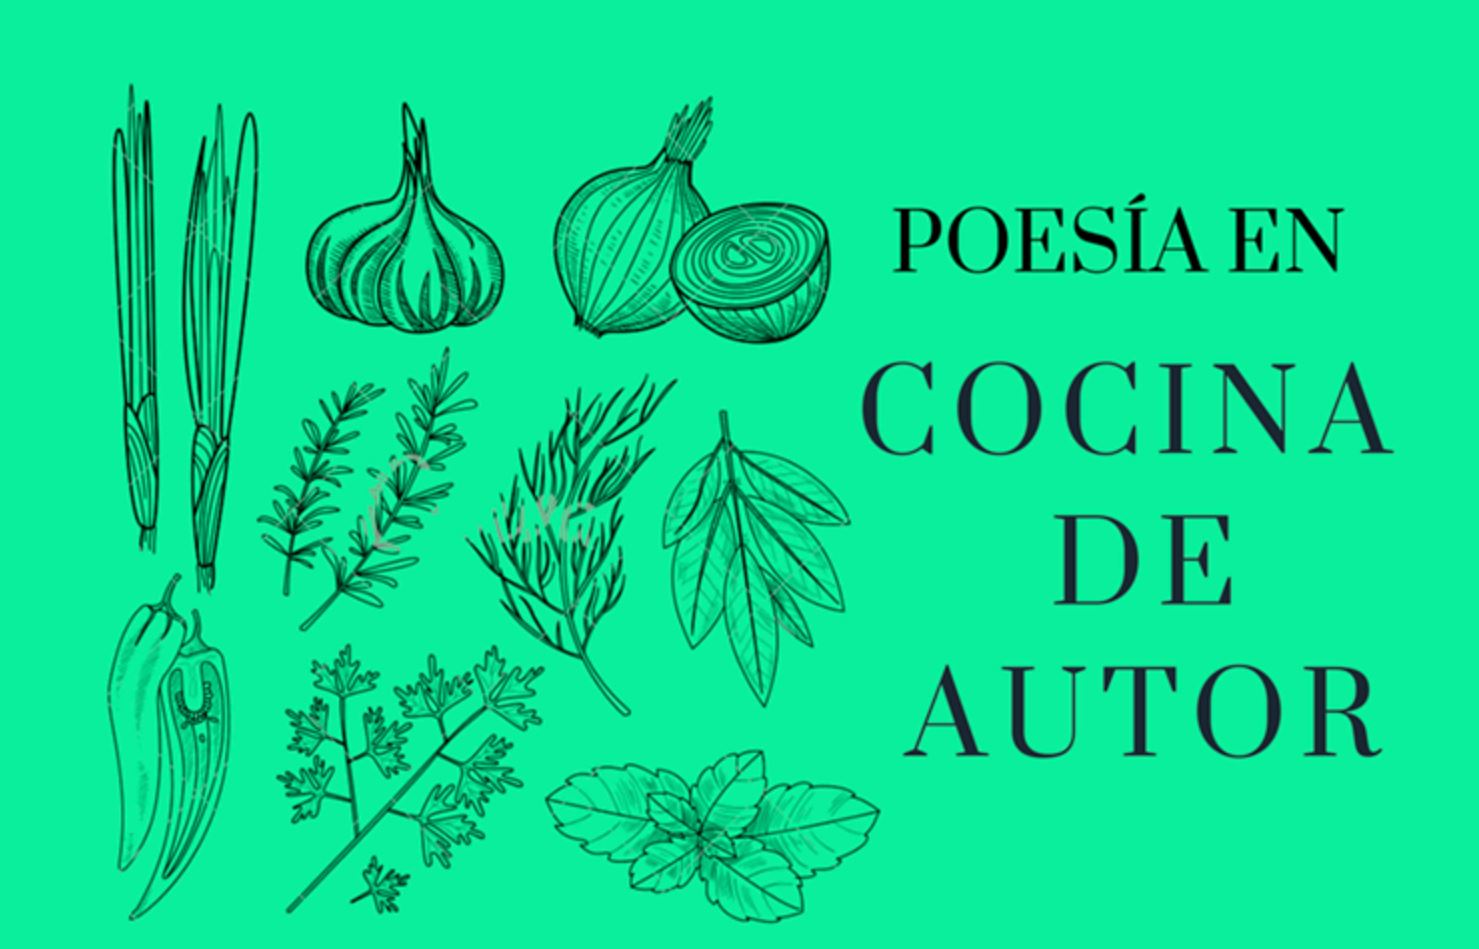 Cocina de autor 2021-1: “Poetas del XXI” [videos]